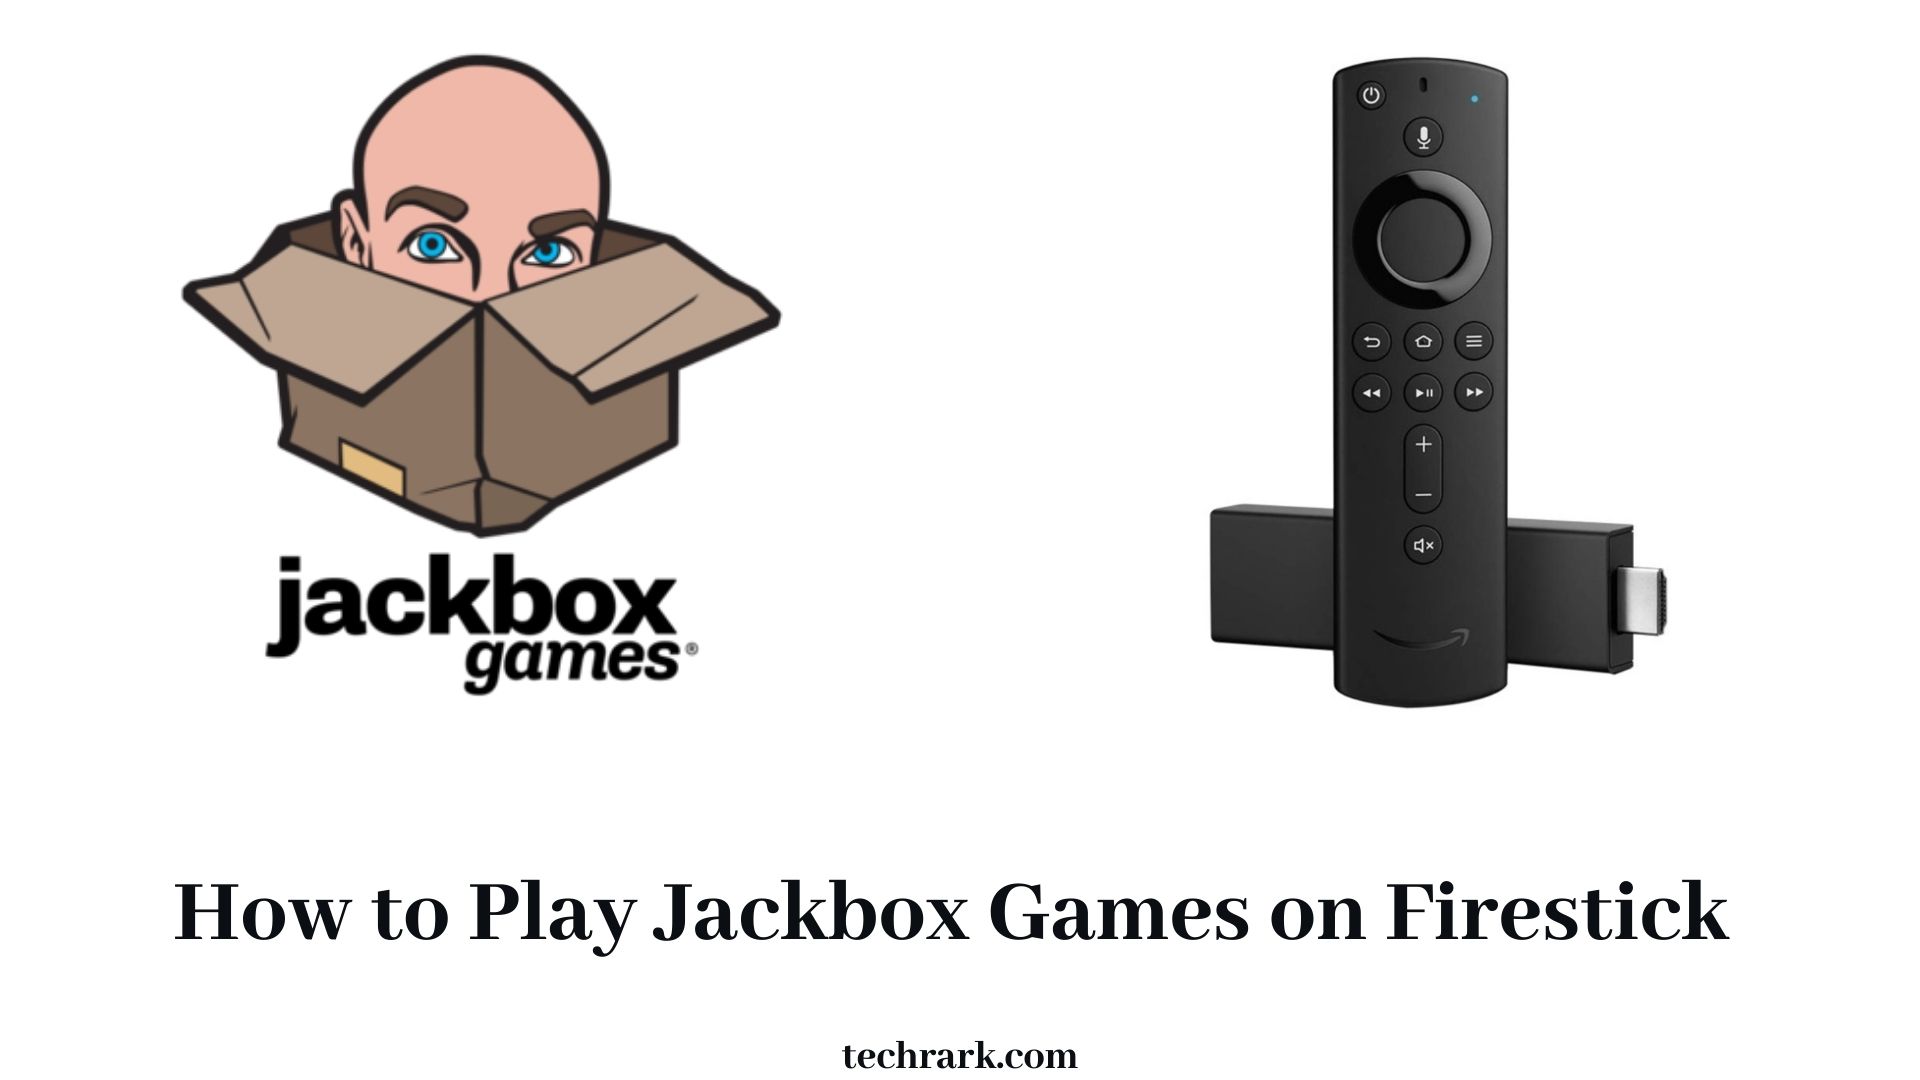 Jackbox Games on Firestick